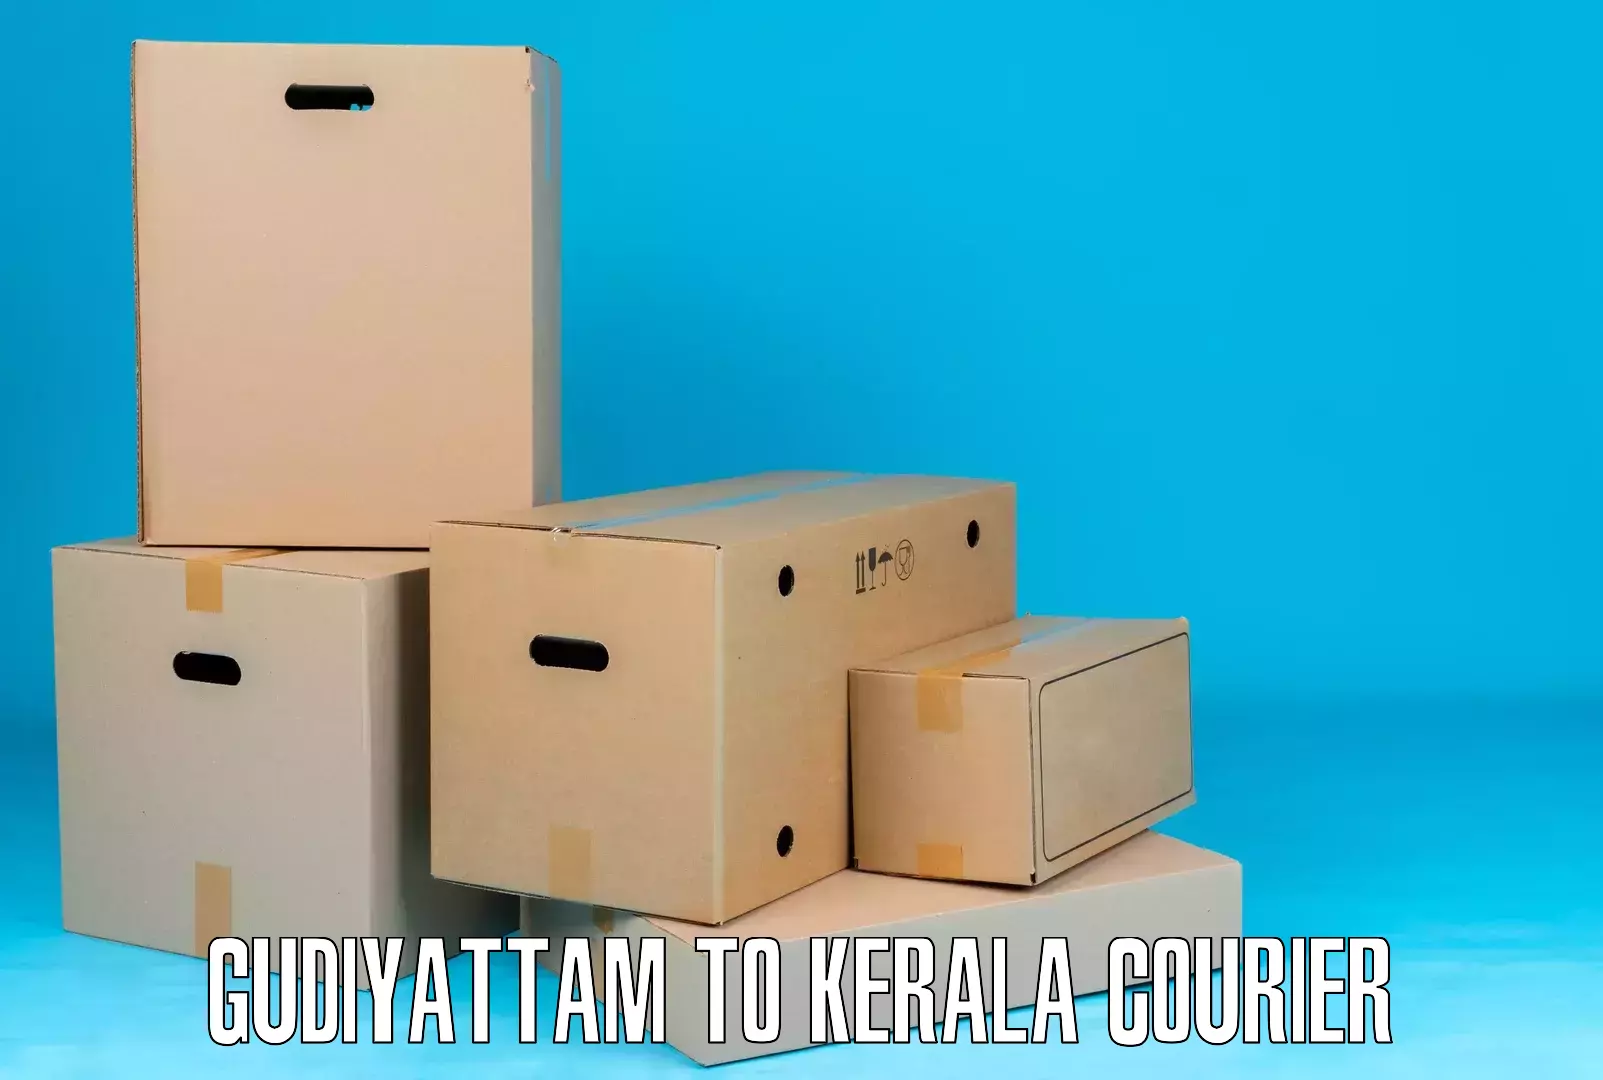 Online shipping calculator Gudiyattam to Karimba